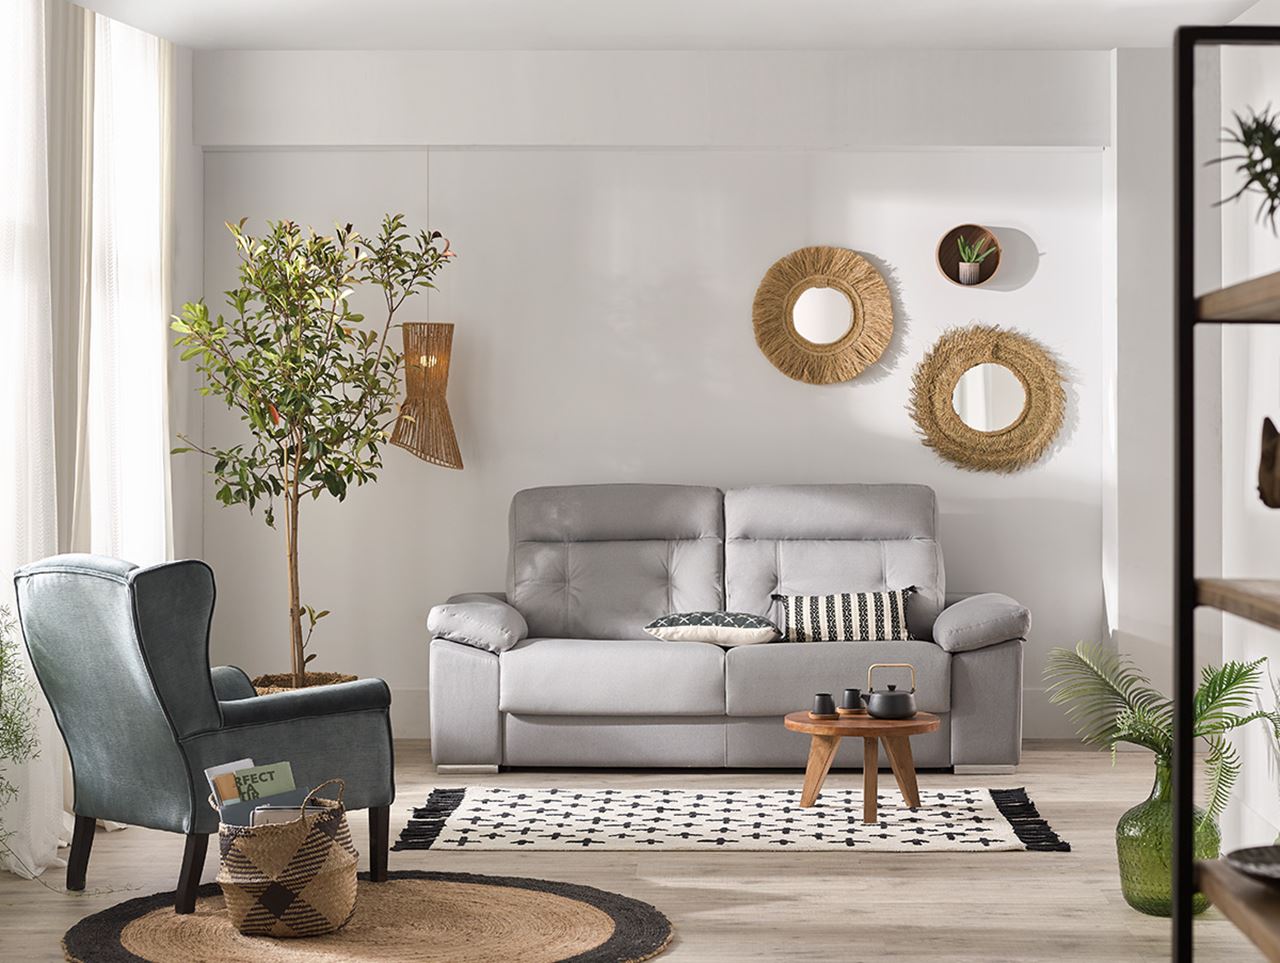 Sumamente elegante Lejos Emulación Sofá, mueble tapizado A522 - Guarpi.com tienda de muebles, muebles al mejor  precio y calidad